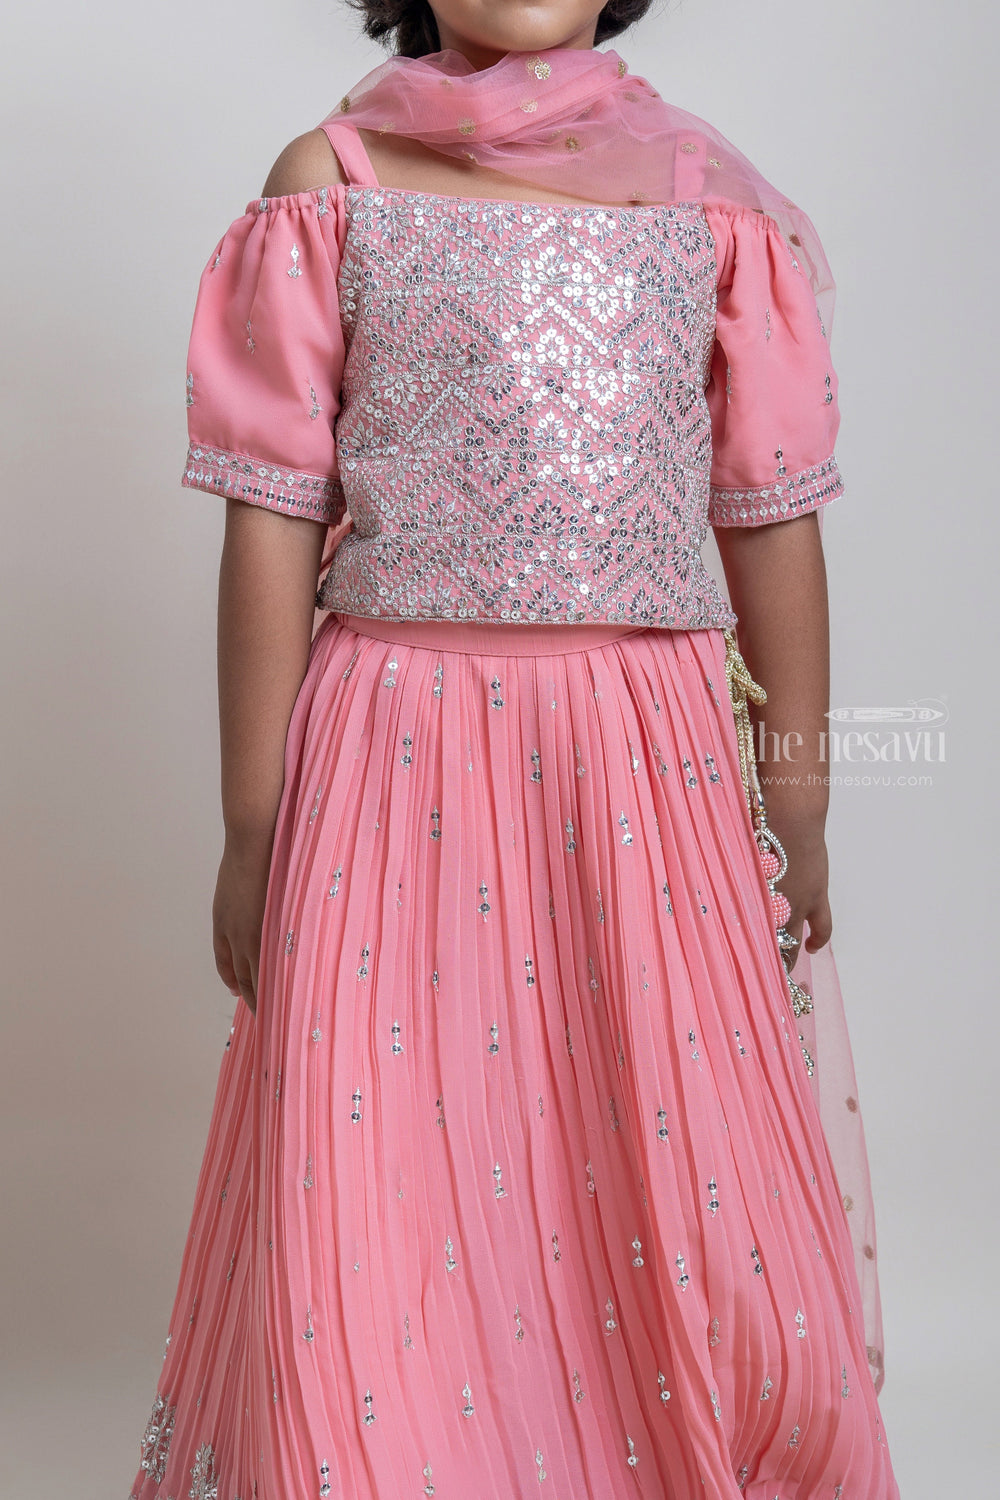 The Nesavu Lehenga & Ghagra Beautiful Salmon Pink Sequence Embroidered Choli With Designer Lehenga For Girls Nesavu Stone art Designer Lehanga choli | Premium dress For Girls | The Nesavu